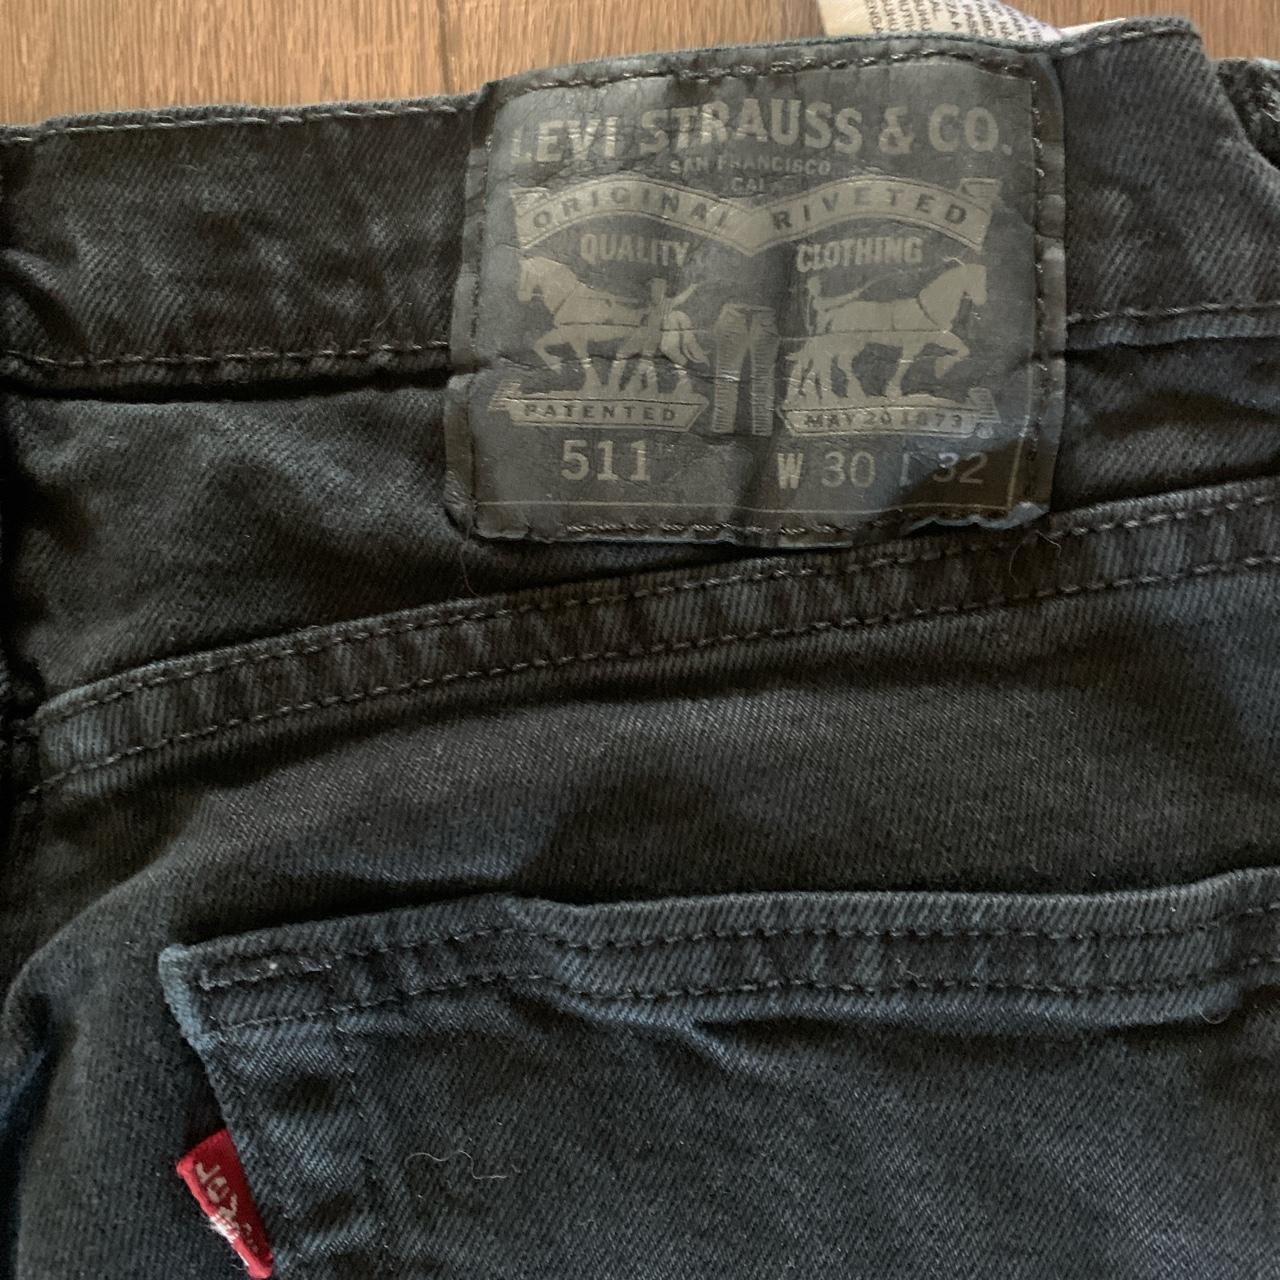 Levi’s 511 jeans. W30 L32 faded black skinny fit... - Depop